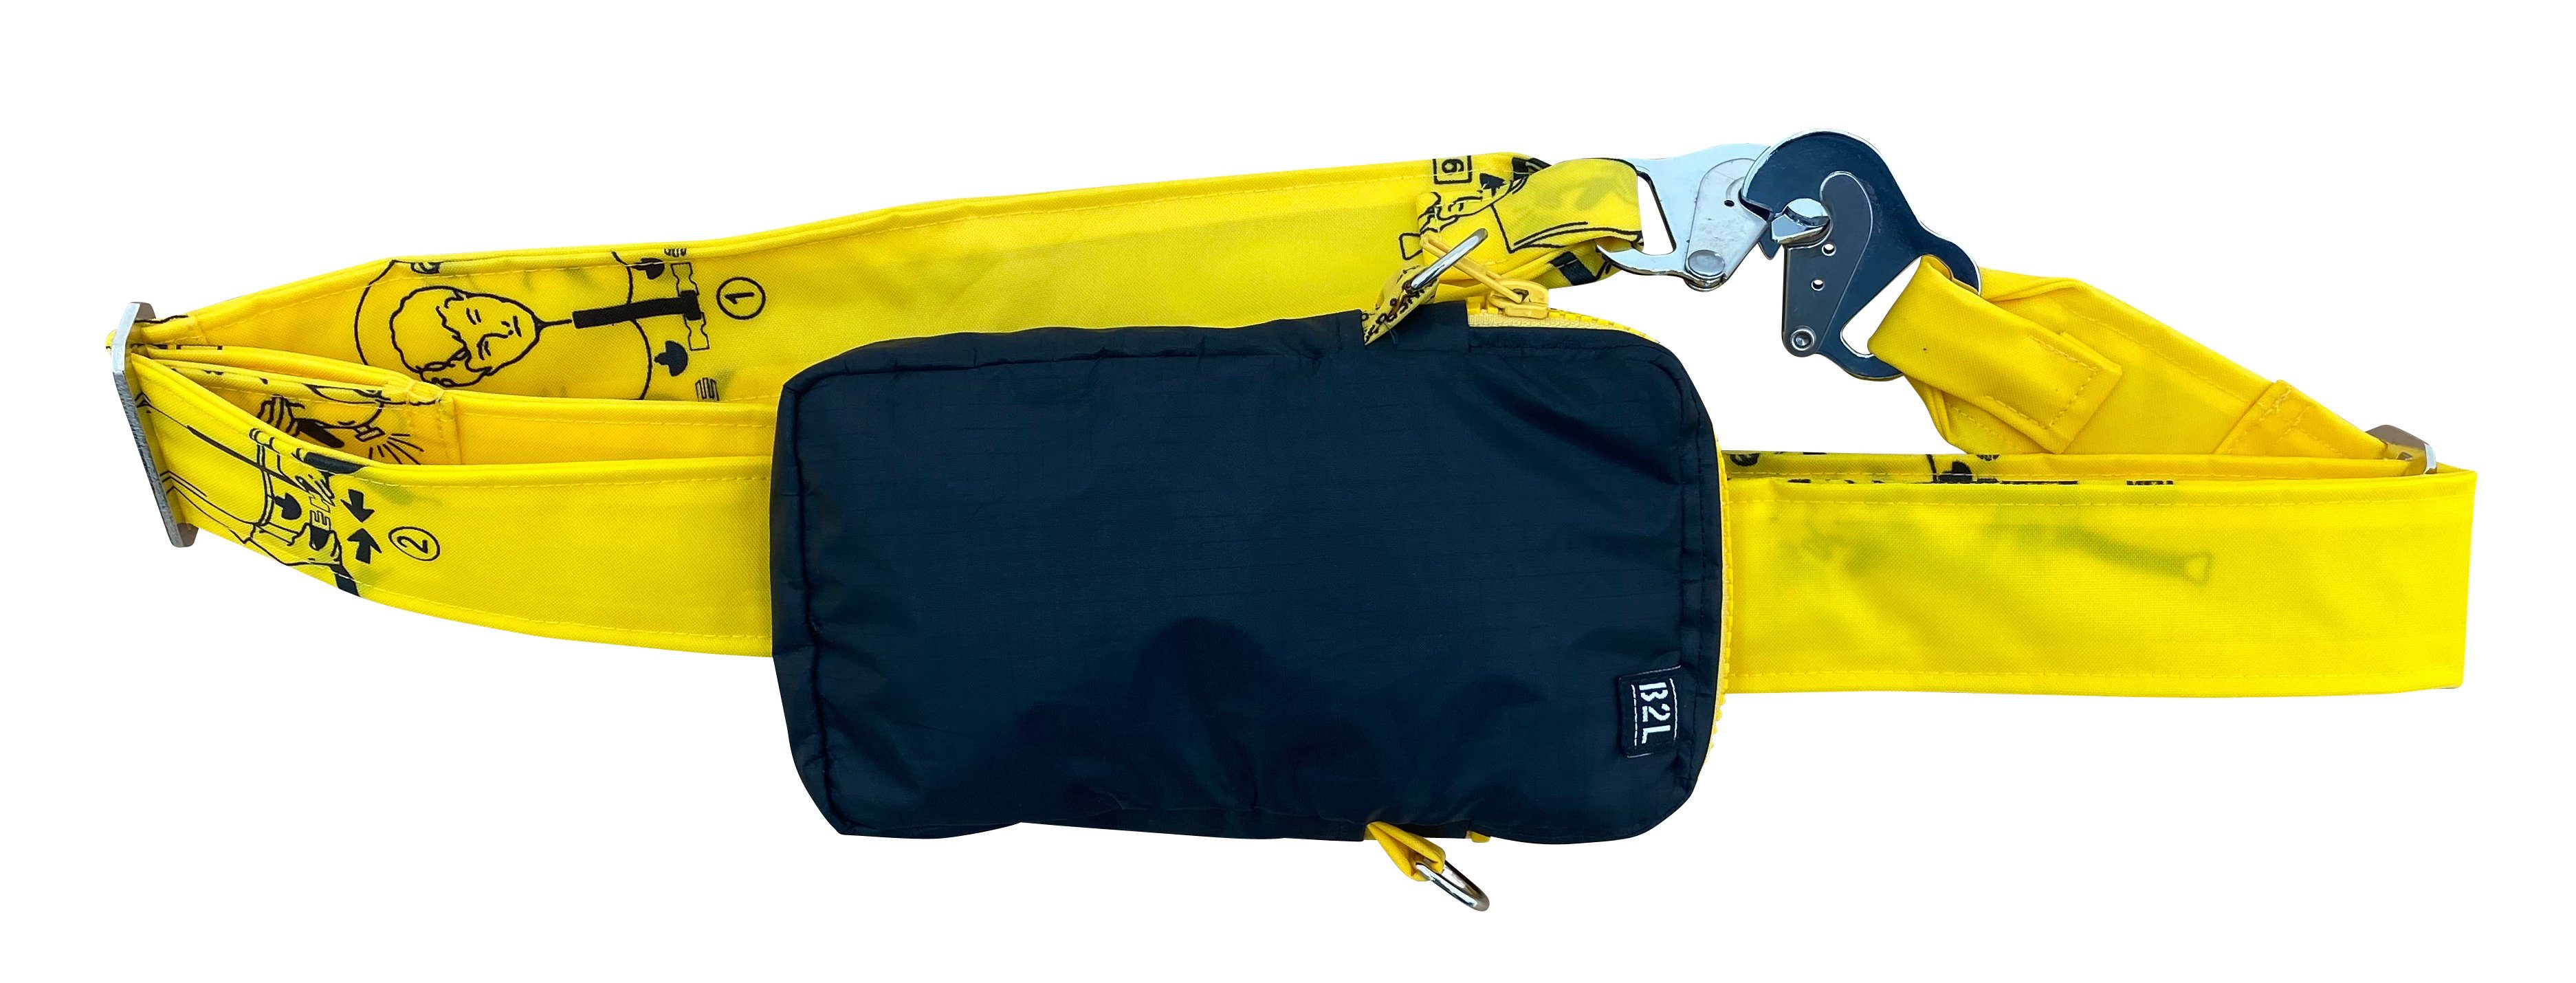 Umhängetasche Bag praktischen Life Bag, im Romeo Design to